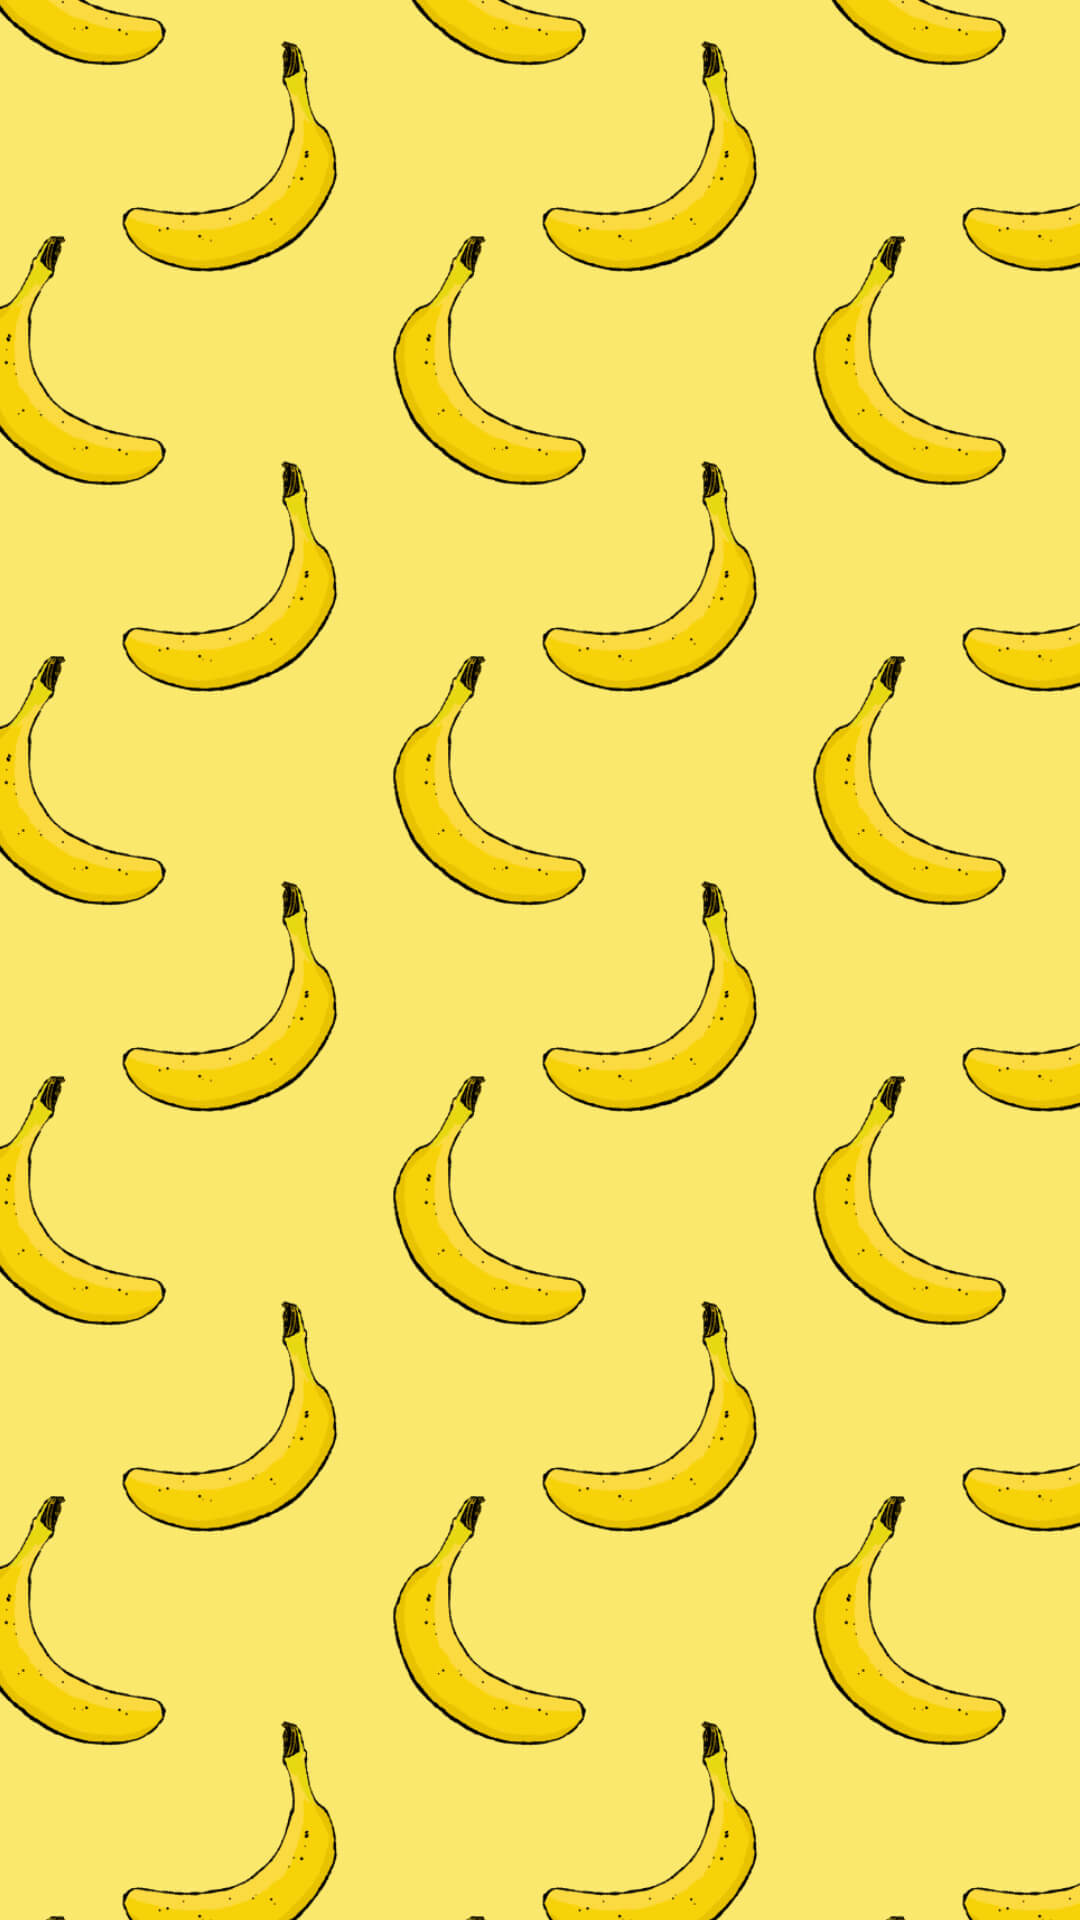 バナナのパターンのスマホ用壁紙 Raddiey Free イラストレーターraddieyのフリー素材